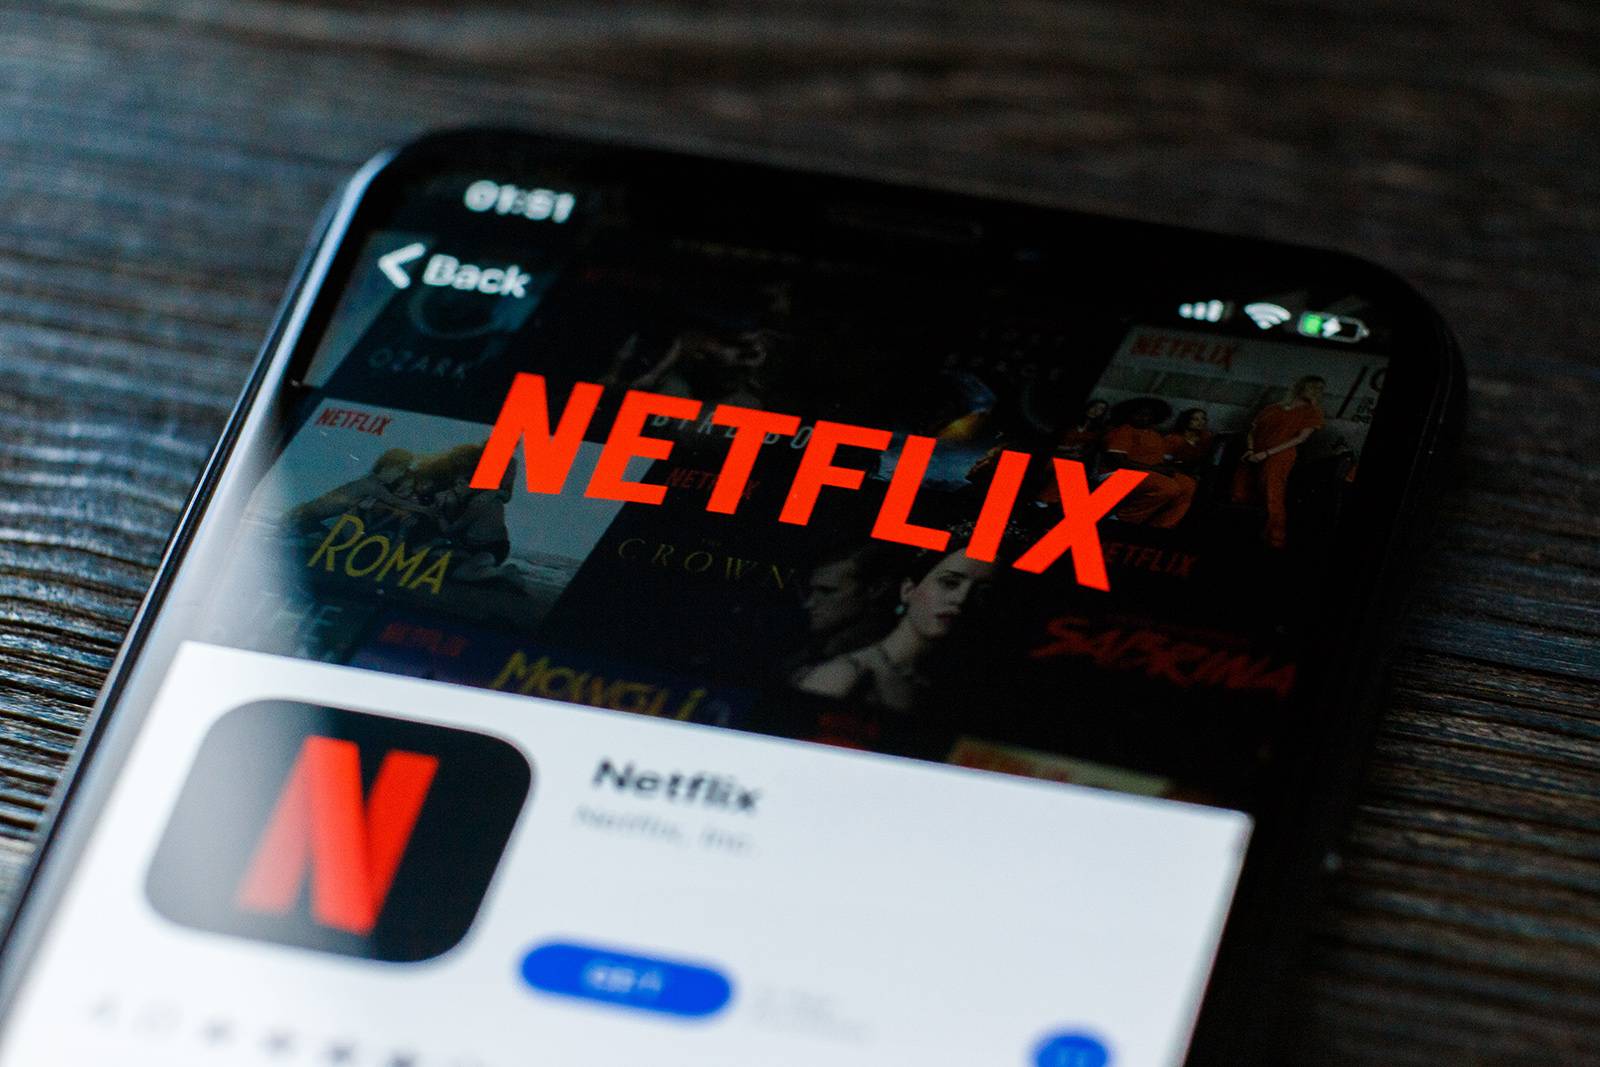 Appleпоследний заказчик доказывает, что компания серьезно настроена конкурировать с Netflix.